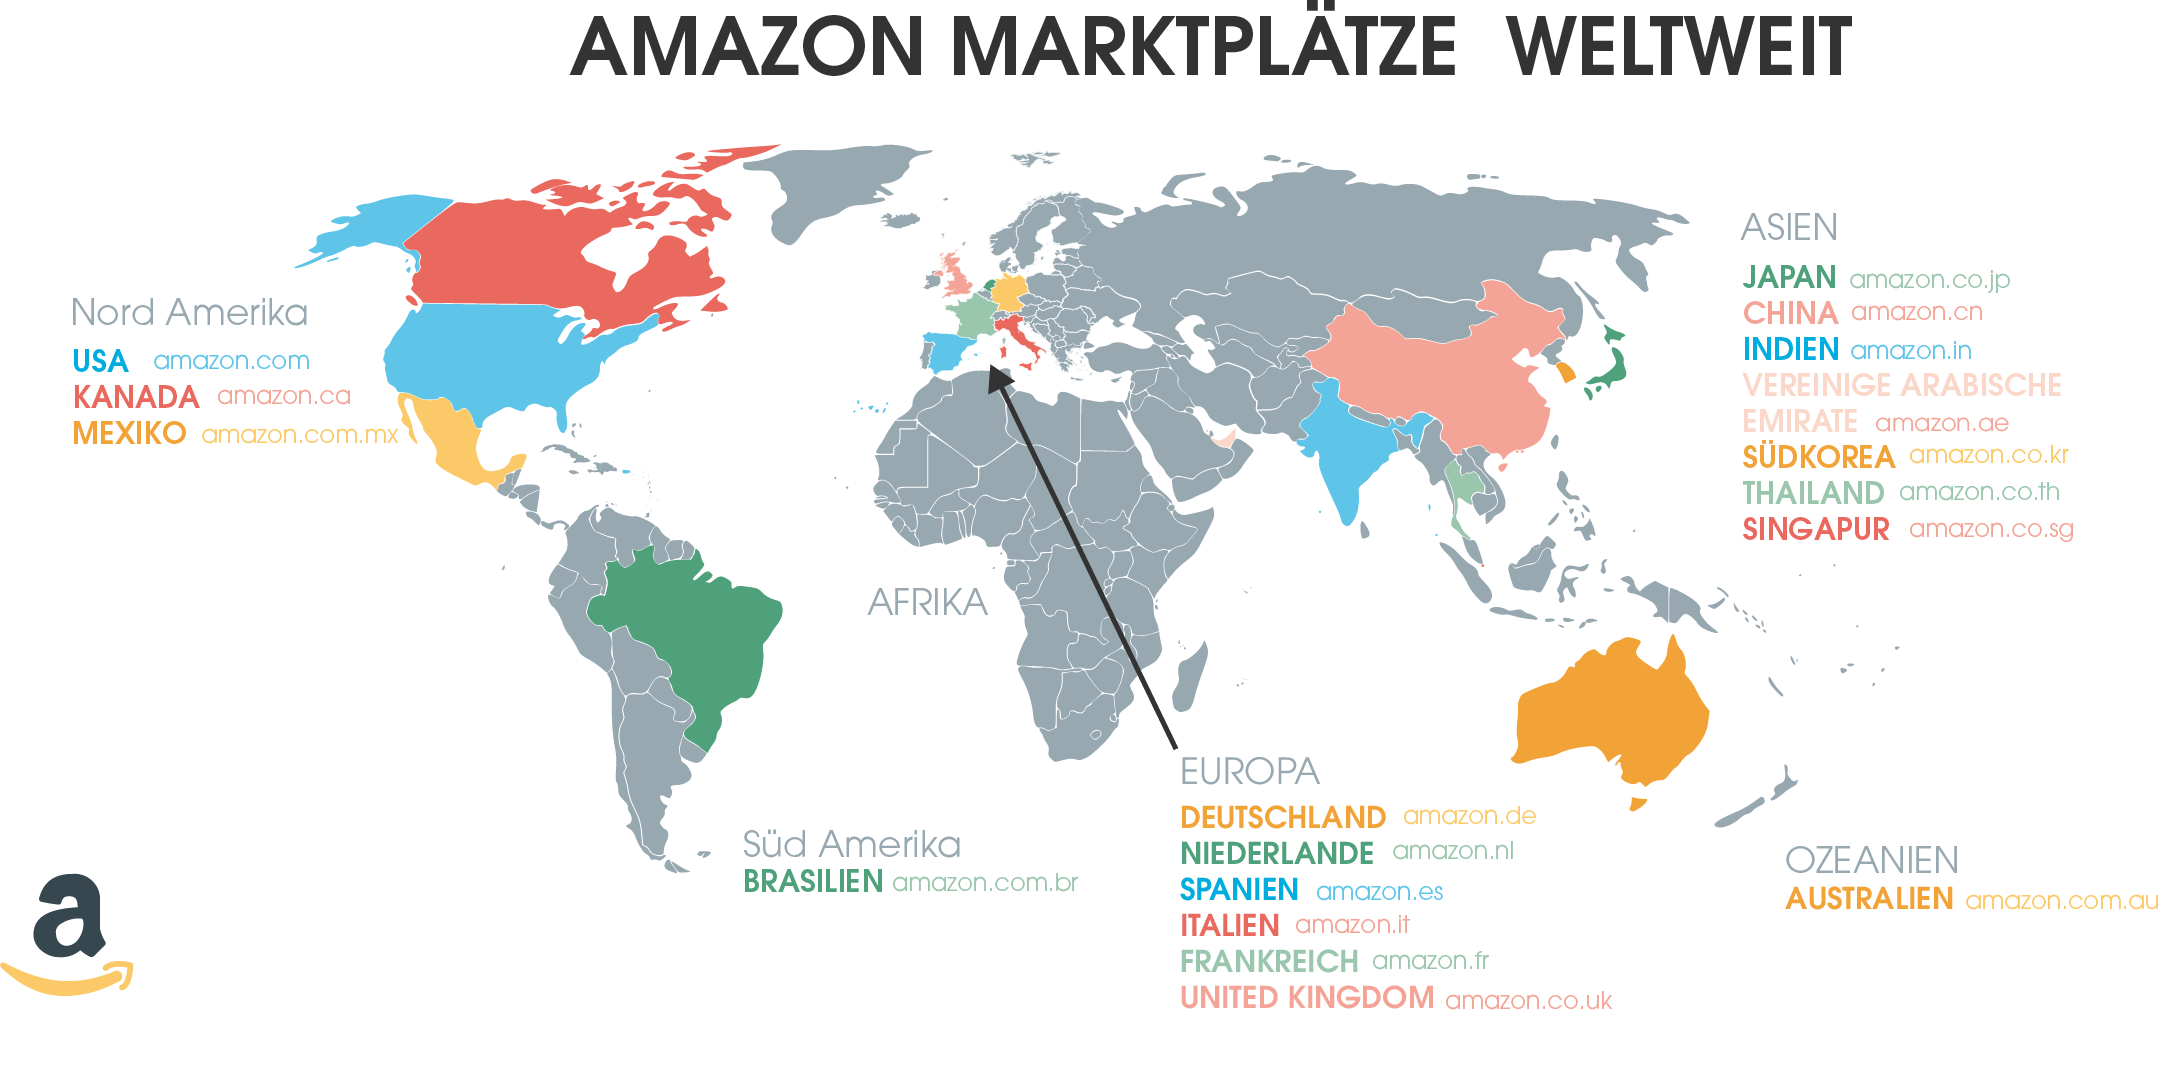 Diese Amazon Marktplätze gibt es aktuell weltweit.